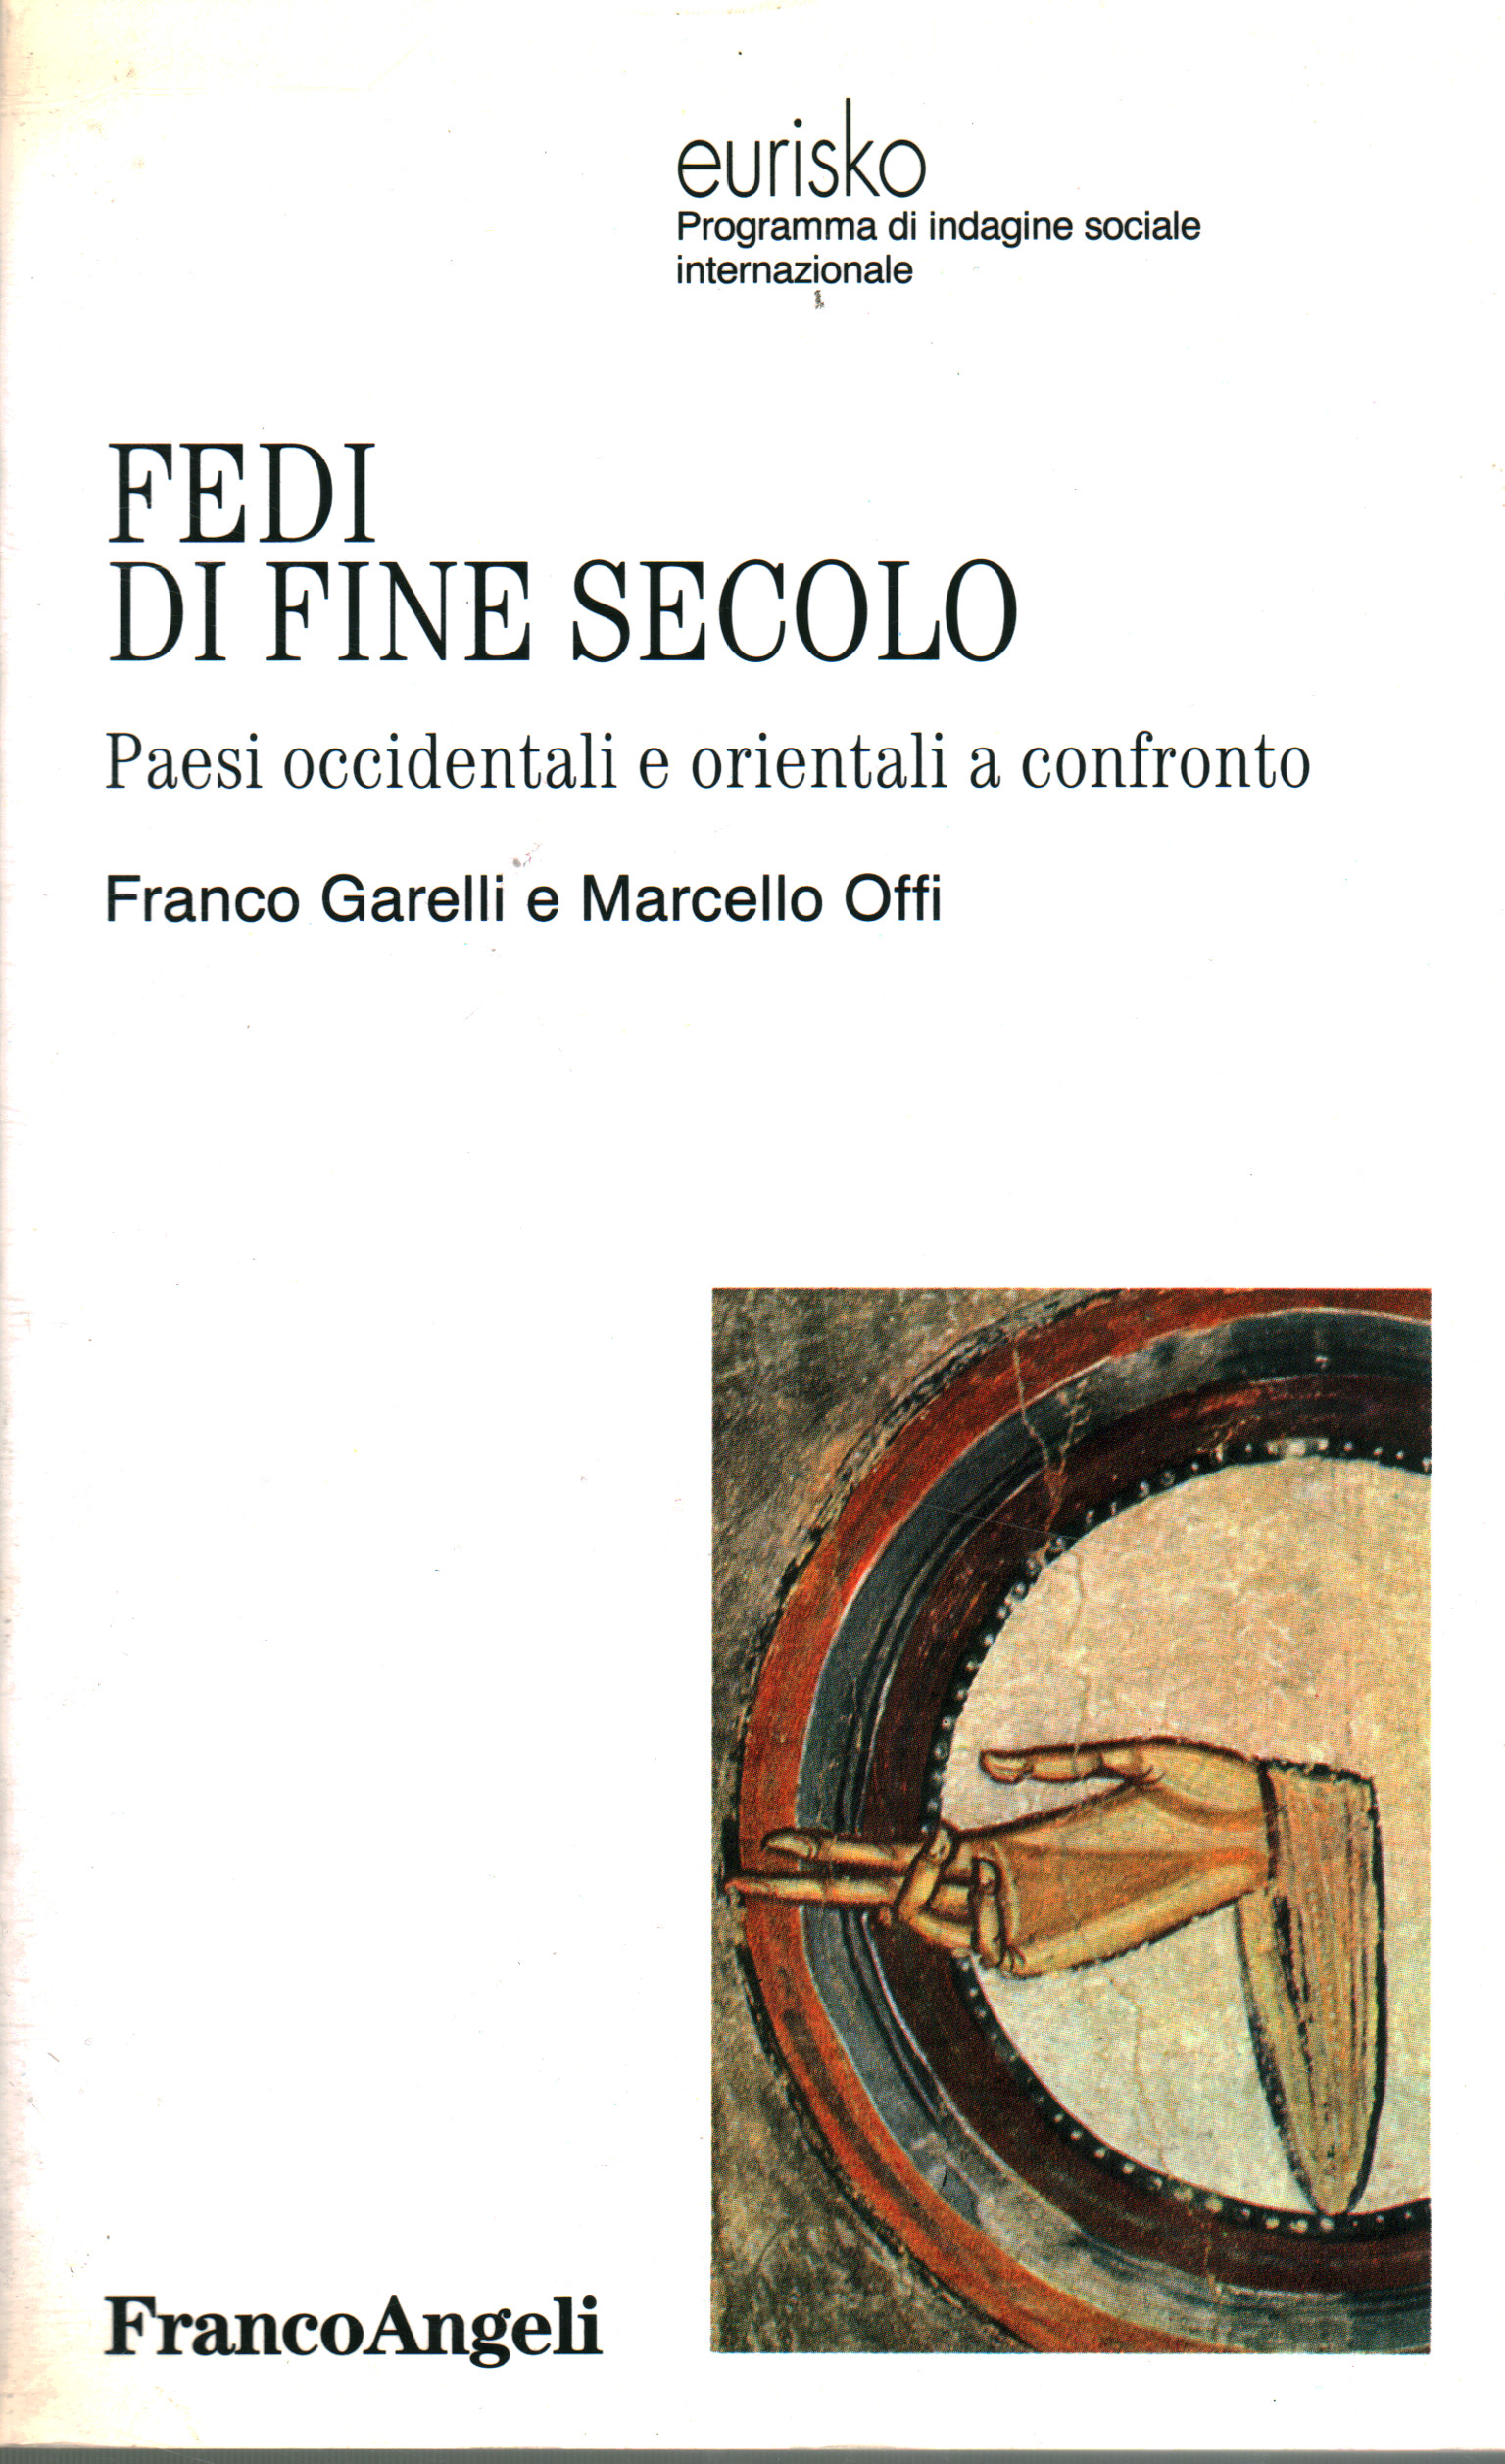 Fedi di fine secolo, Franco Granelli Marcello Offi